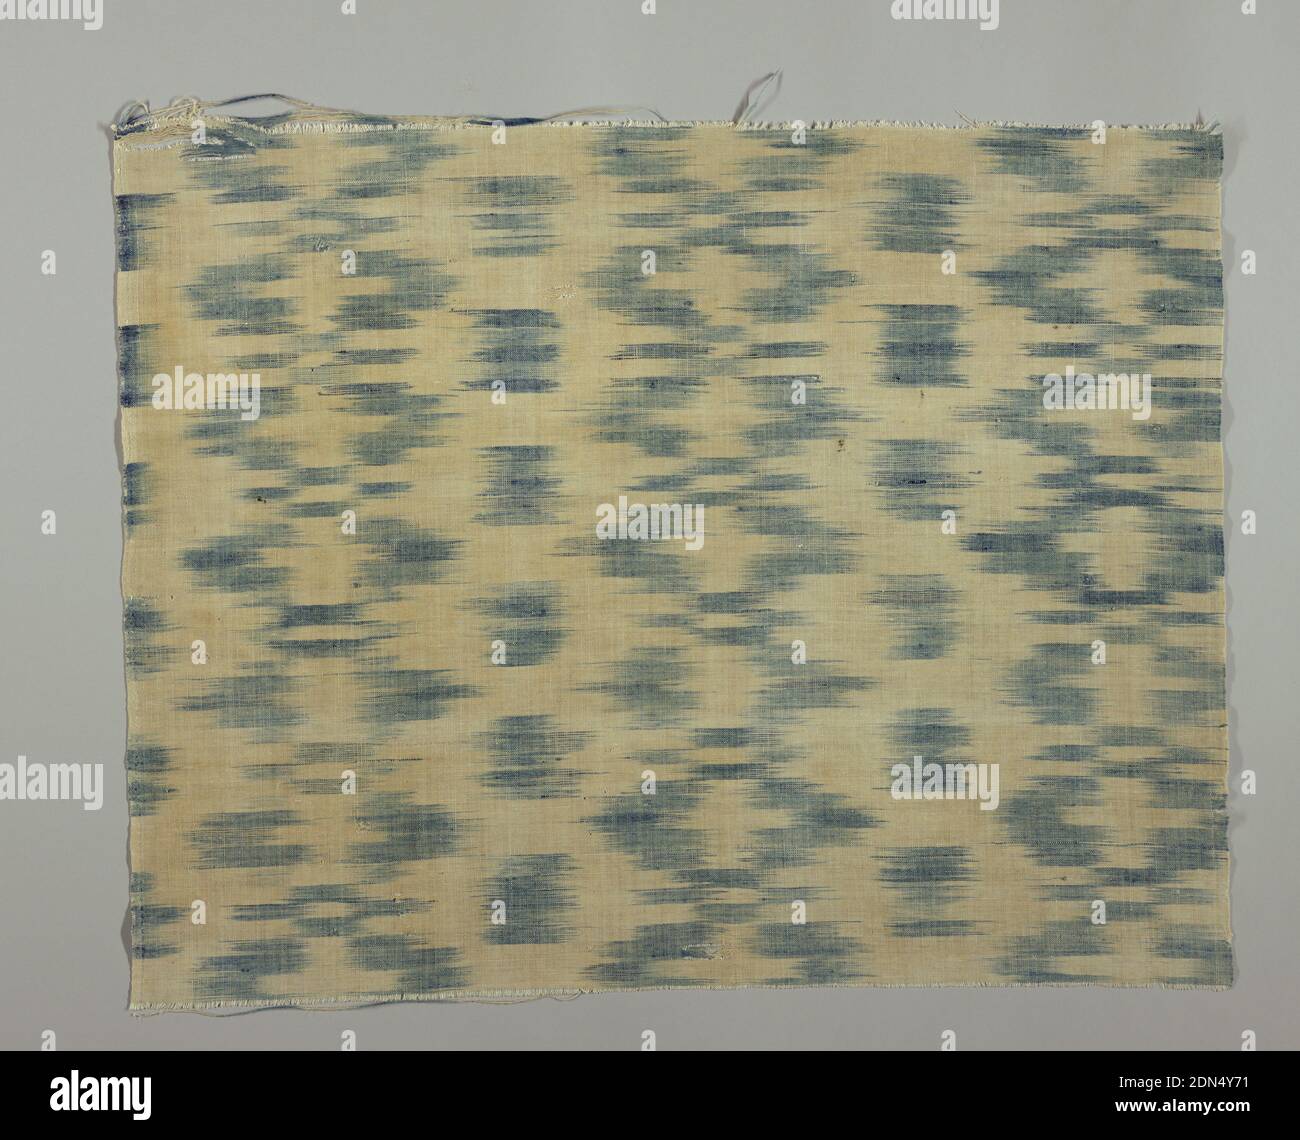 Tessuto, Medio: Cotone, tecnica lino: Resistente ordito stampato (ikat) su  tessitura semplice, lunghezza di tessuto di cotone e lino con blazes  orizzontali di blu ombreggiato da ordito ikat. Cimossa di stoffa che